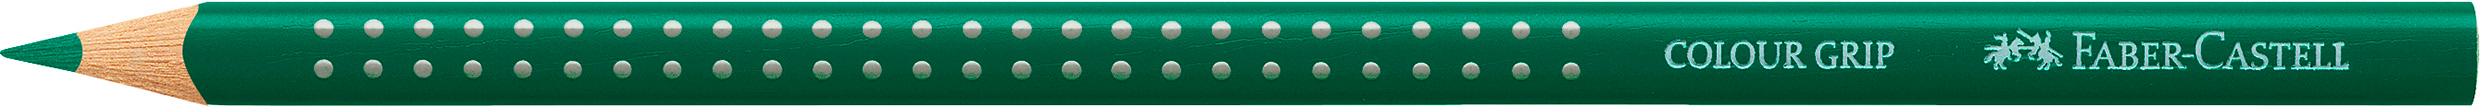 FABER-CASTELL Crayon de couleur Colour Grip 112441 vert